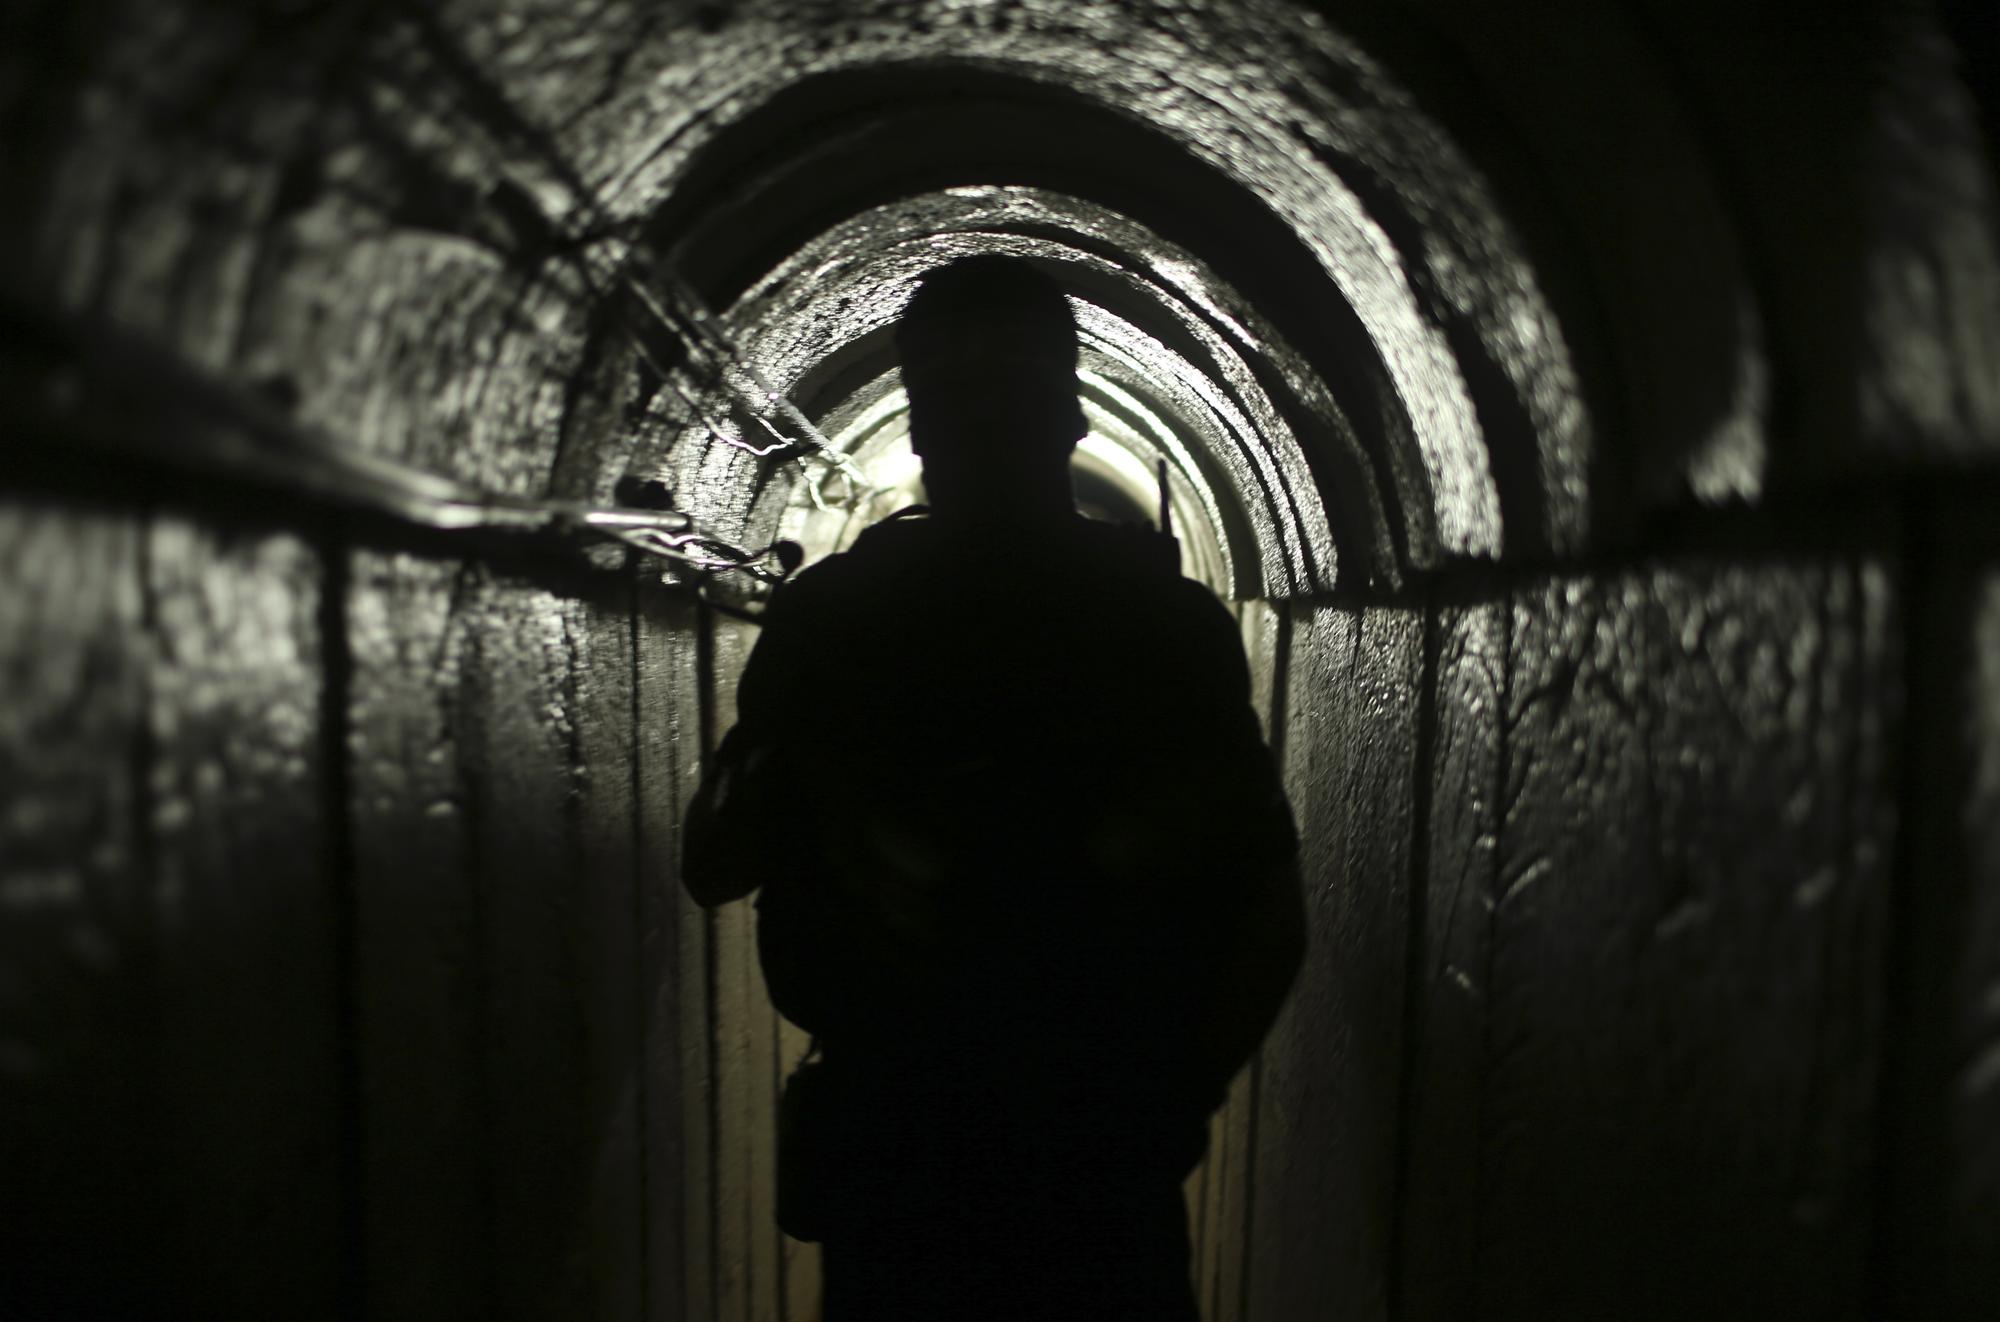 Un combattant palestinien de la branche armée du mouvement Hamas photographié à l'intérieur d'un tunnel souterrain à Gaza, le 18 août 2014 (image d'illustration). [reuters - Mohammed Salem]